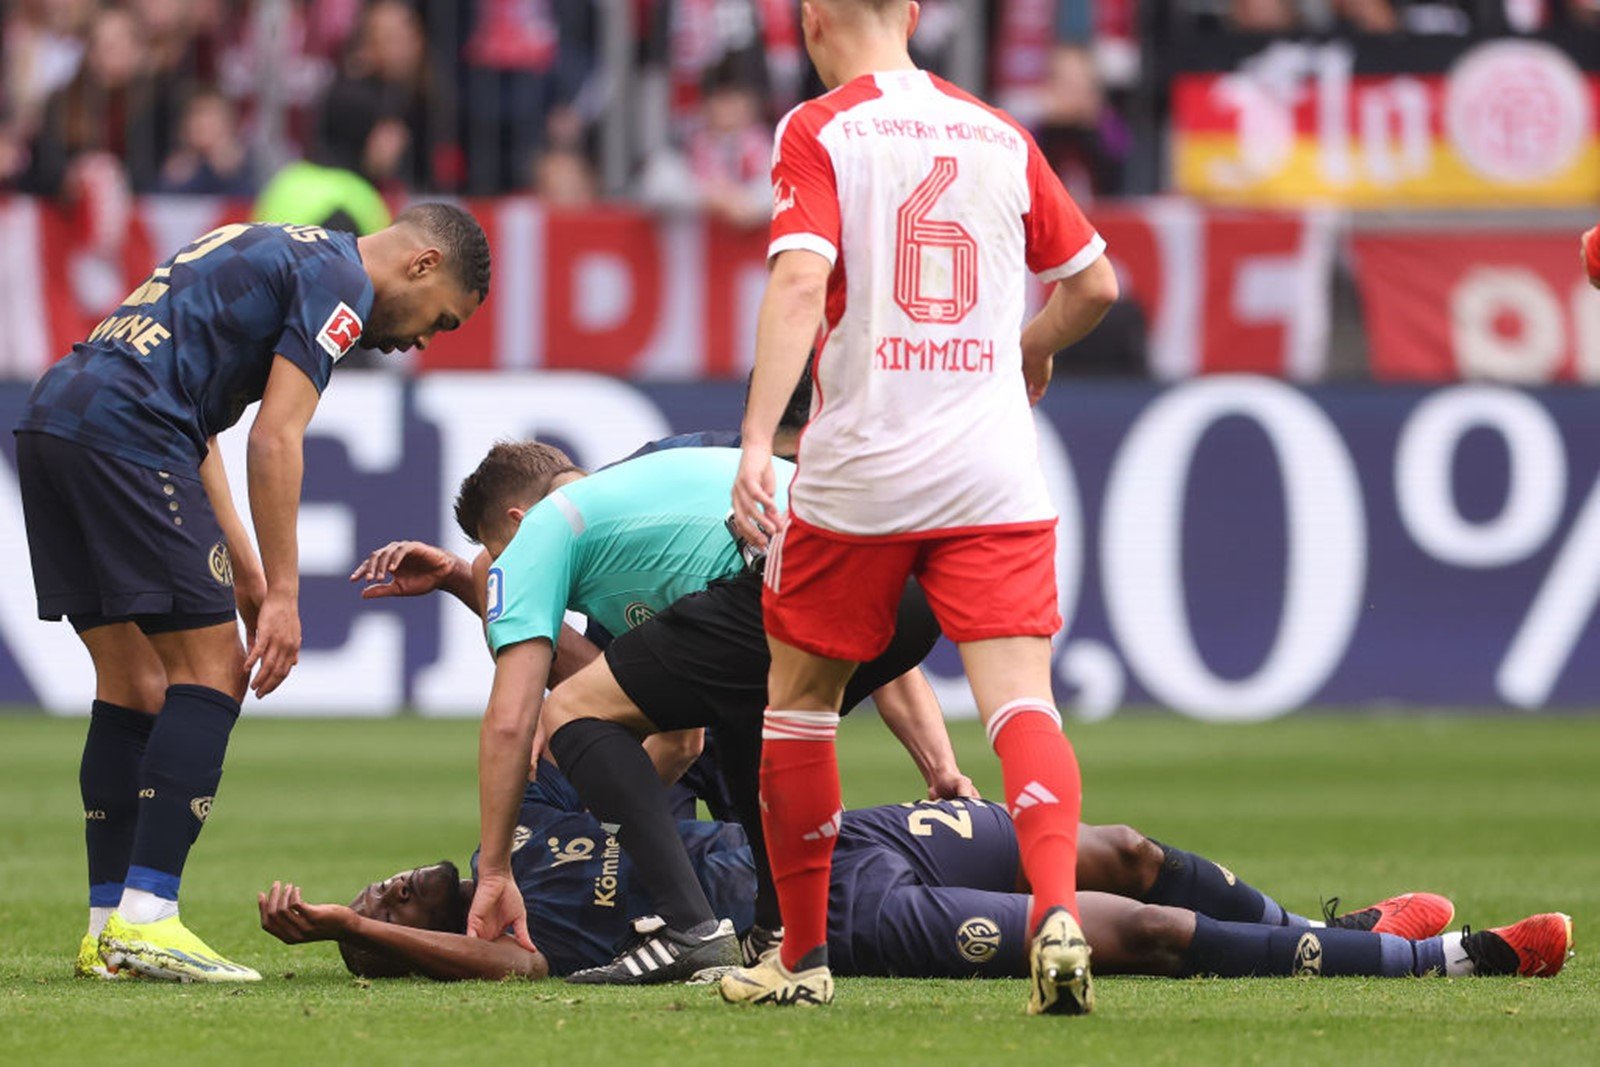 Der Schiedsrichter rettet einen Spieler, nachdem er während eines Spiels der Deutschen Meisterschaft mit ihm zusammengestoßen ist